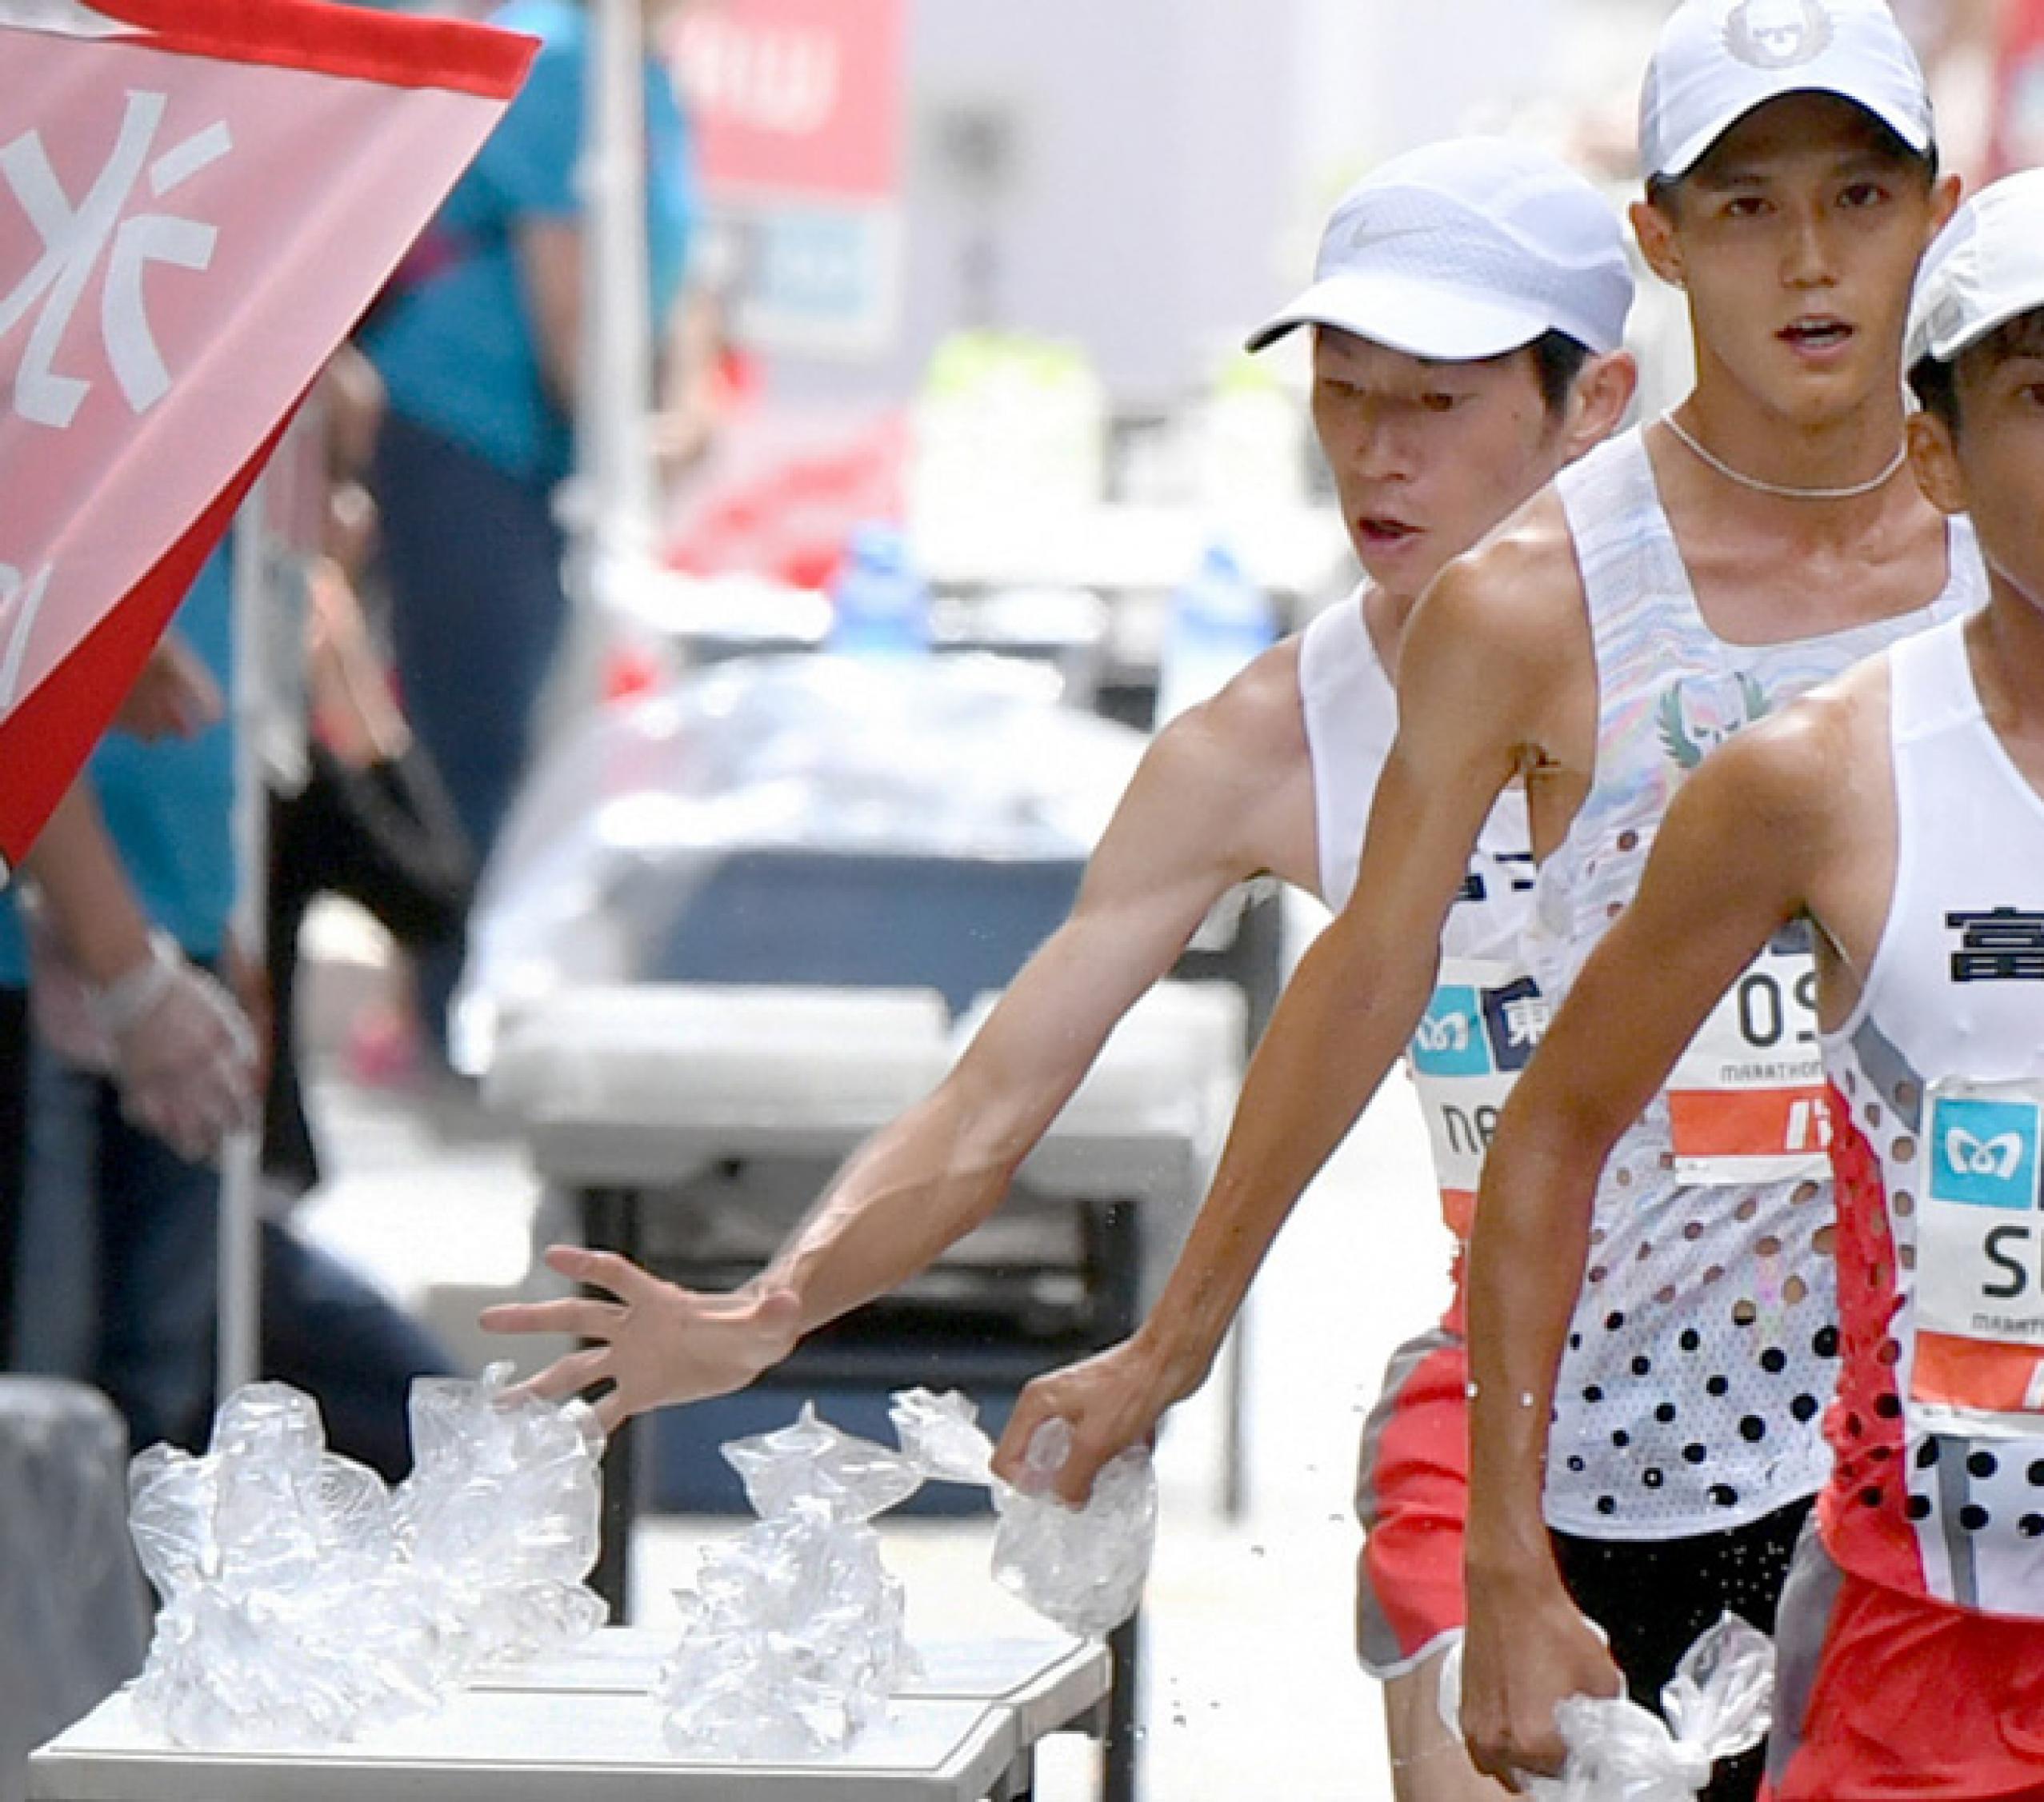 Drei Männer laufen an einem Tisch vorbei, der hinterste greift gerade nach einem Beutel. Bei der Marathon-Meisterschaft in Tokio (September 2019) brauchen die Läufer Kühlung in Form von bereitgestellten Tüten mit Eiswürfeln.